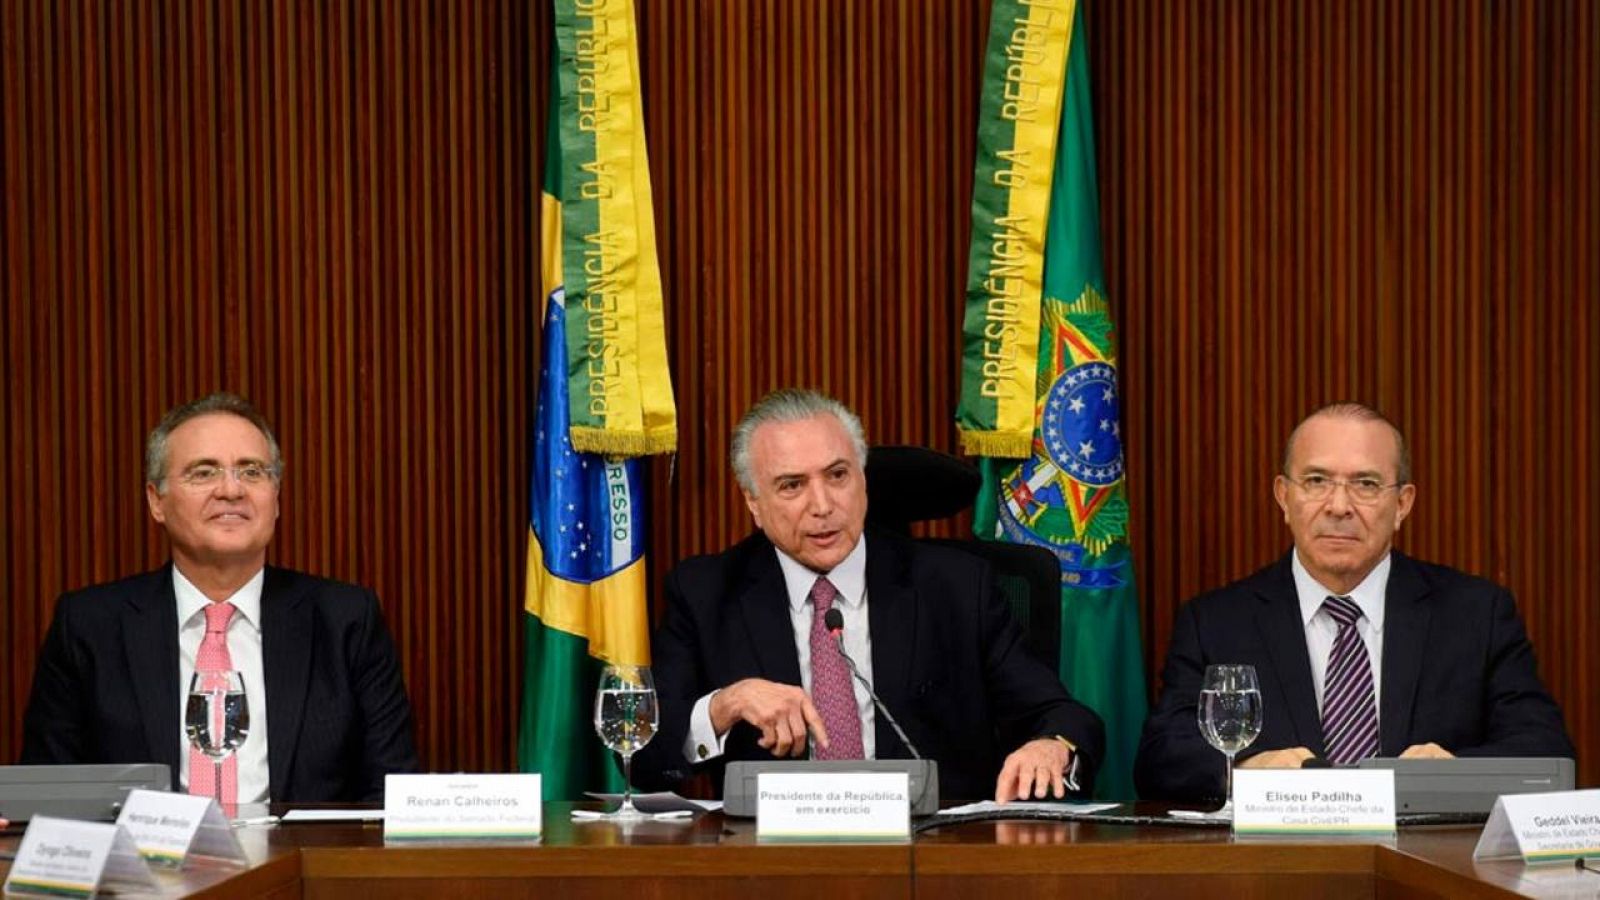 Michel Temer, junto al presidente del Senado Renan Calheiros y el Jefe de Estado Mayor Eliseu Padilha